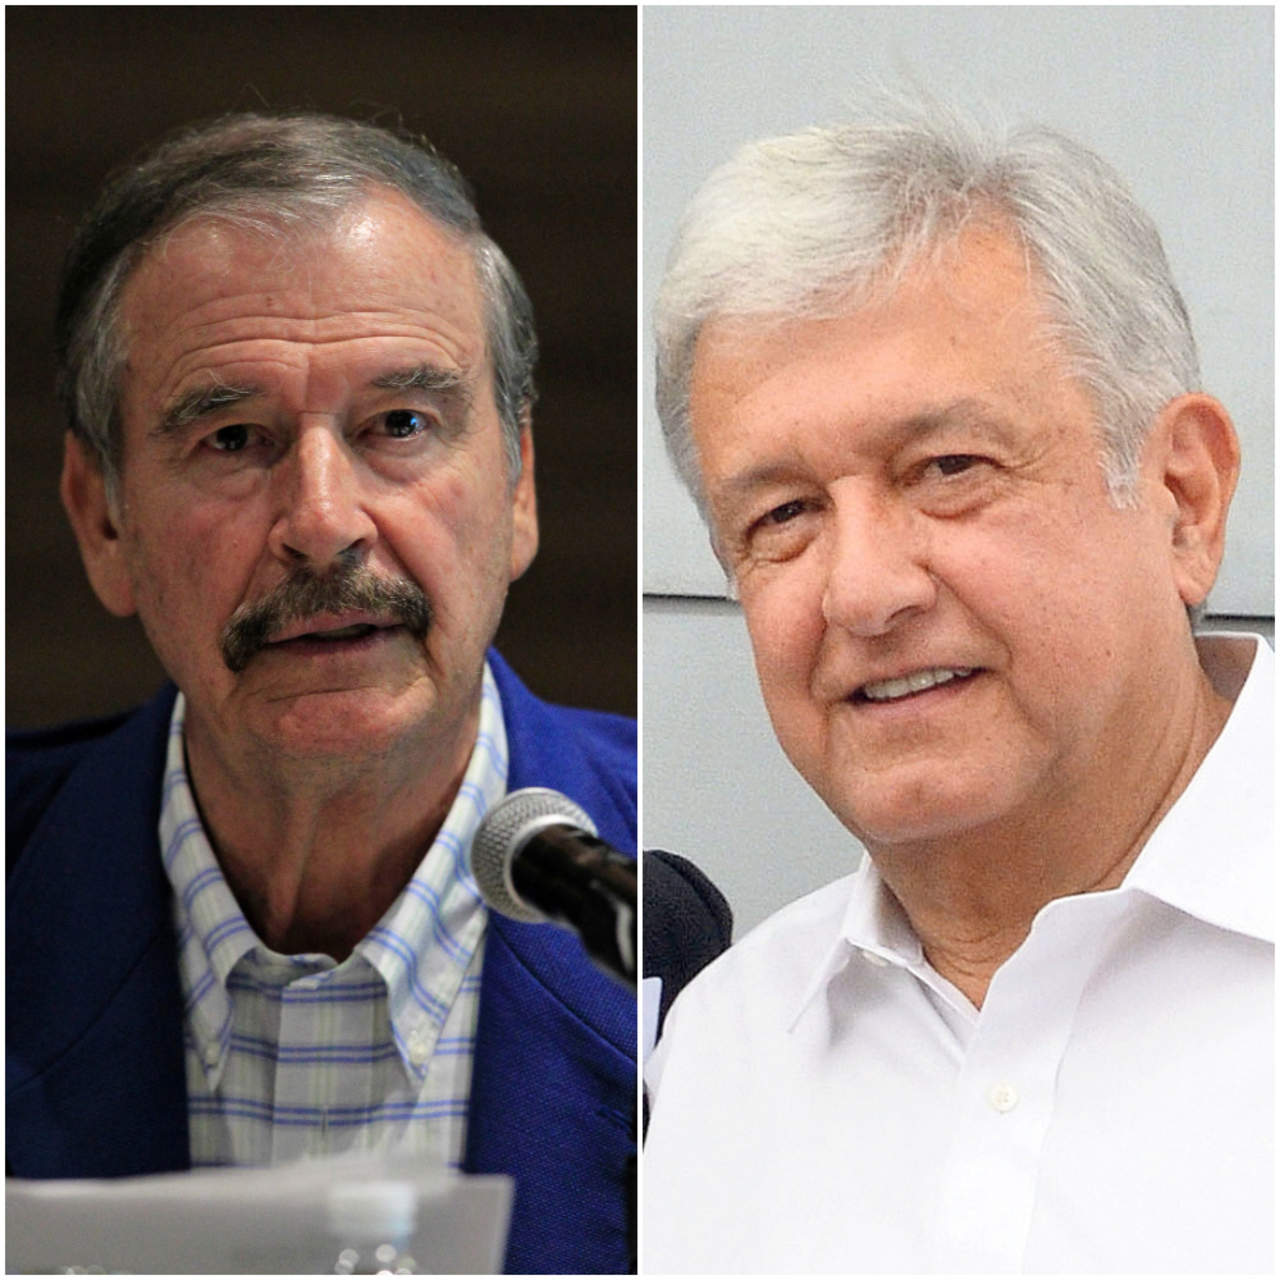 El ex presidente Vicente Fox reiteró que a Andrés Manuel López Obrador, candidato presidencial de Movimiento Regeneración Nacional (Morena), 'le valen m...' las instituciones. (ARCHIVO)